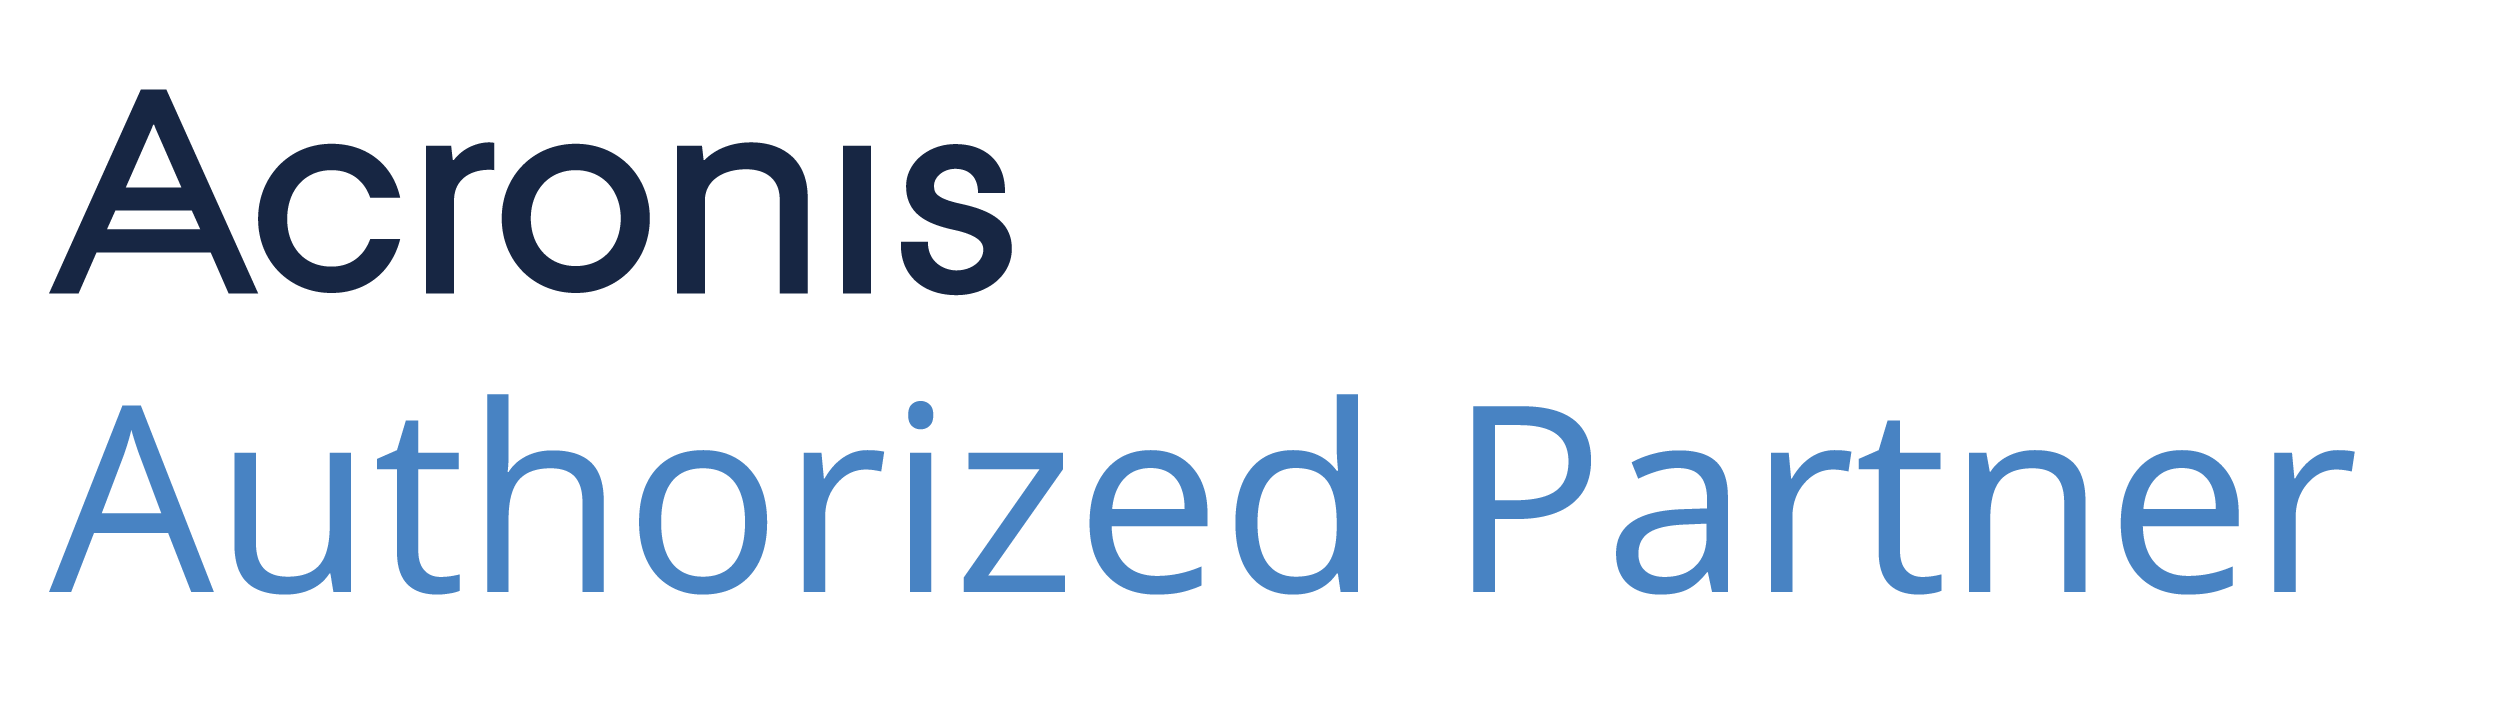 Acronis_Authorized_Partner_Logo_2